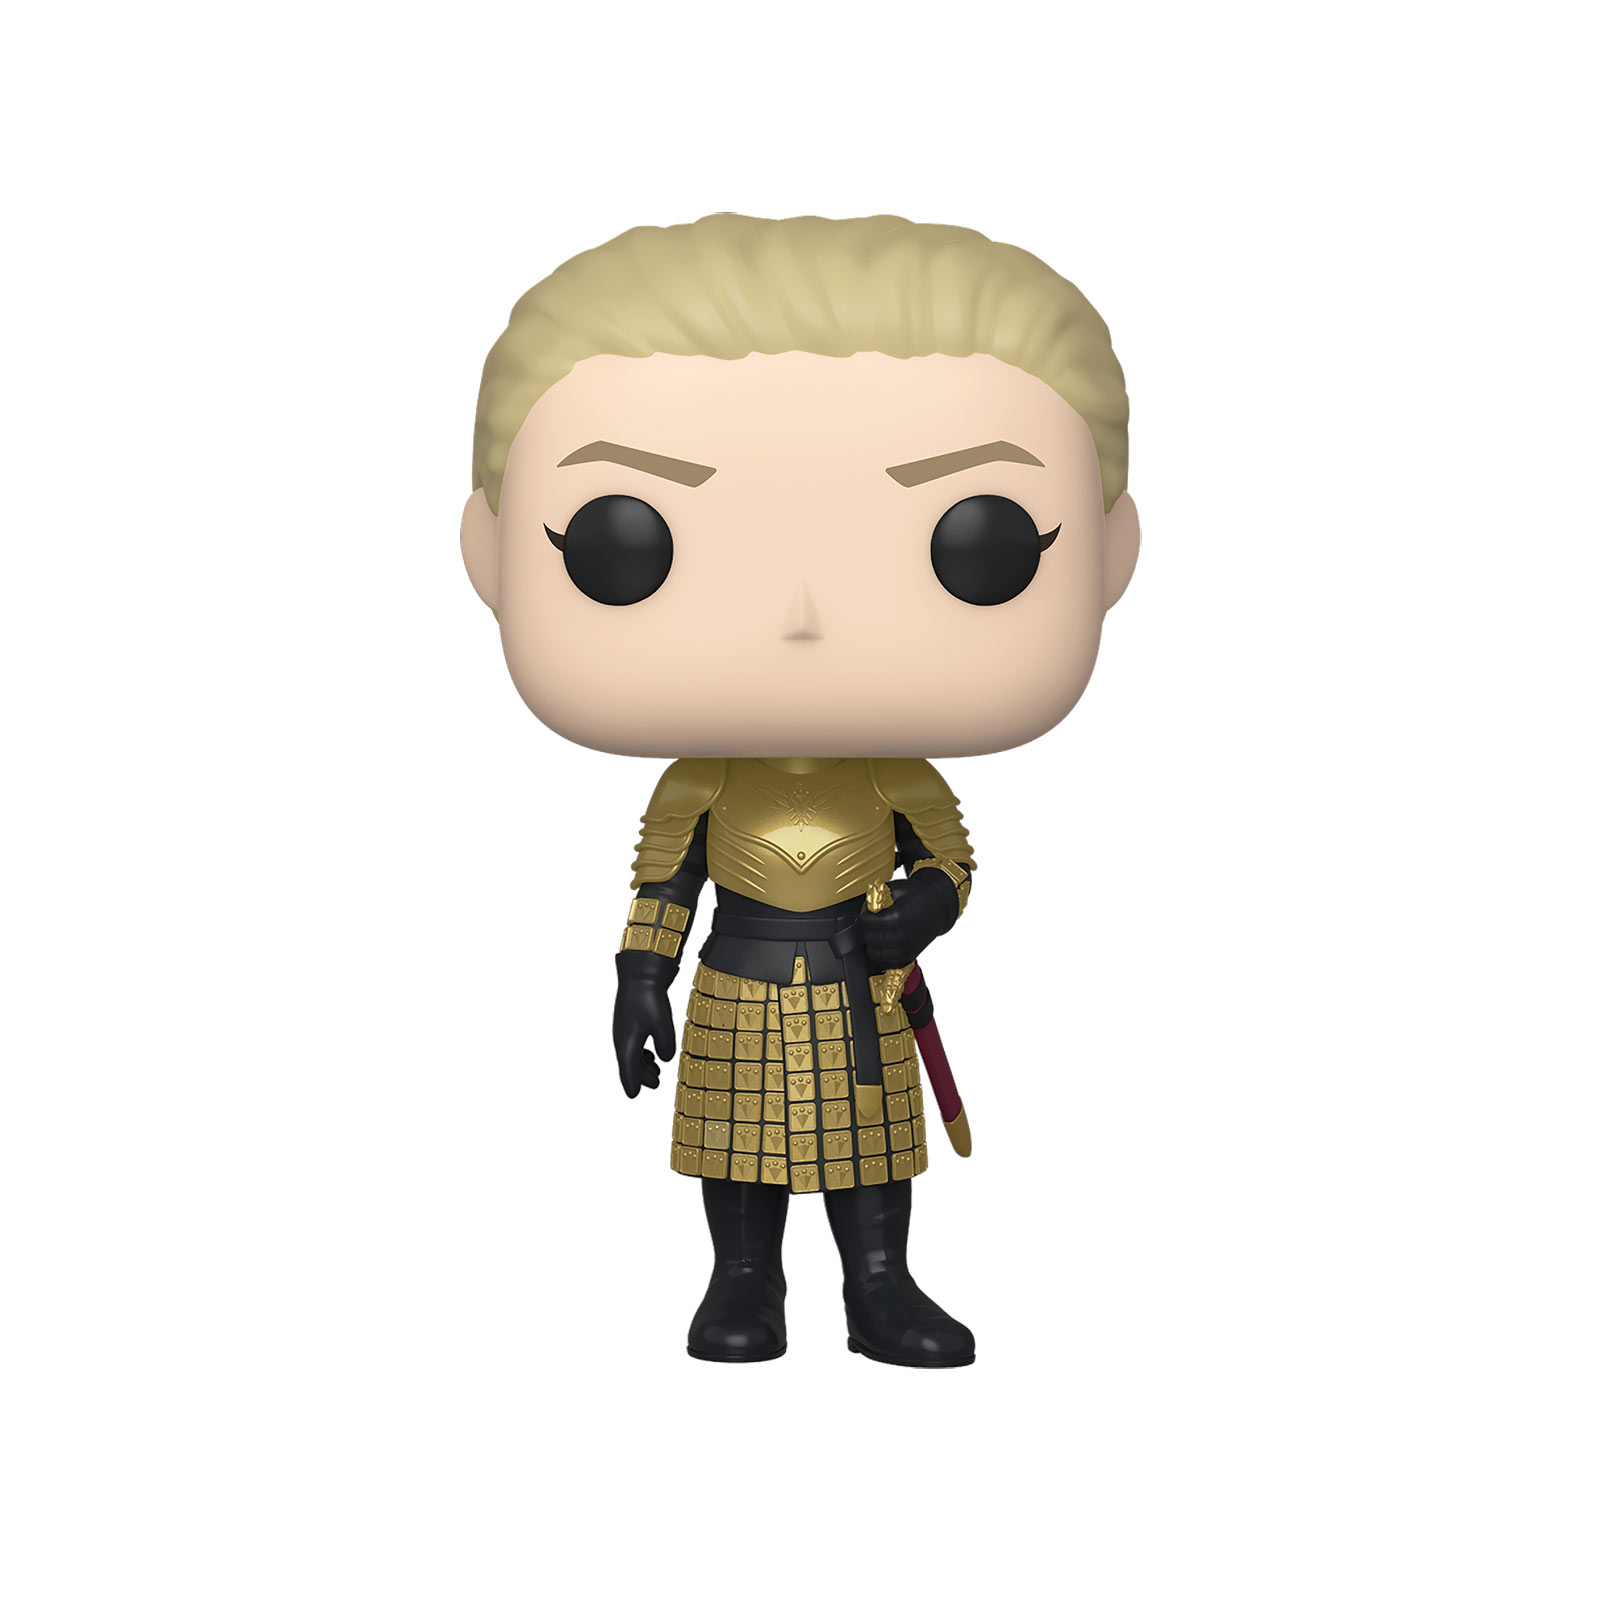 Game of Thrones - Ser Brienne of Tarth Funko Pop Figurine